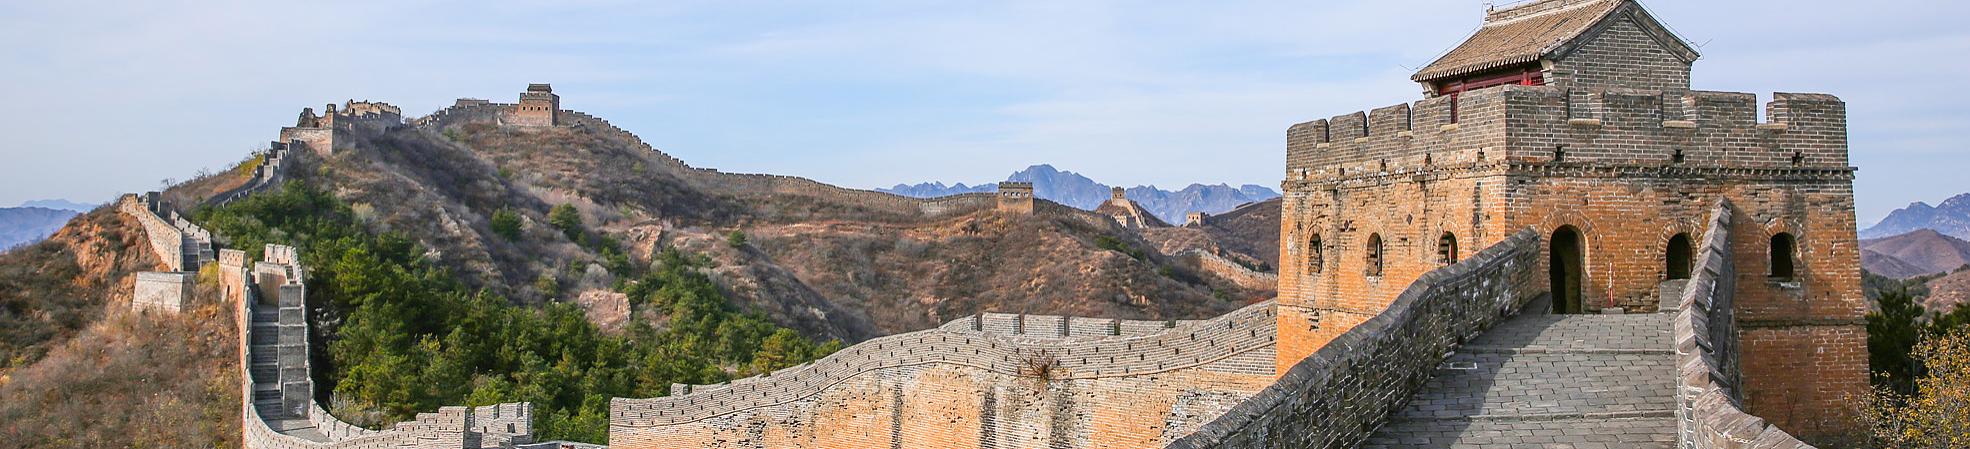 Beijing Great Wall 